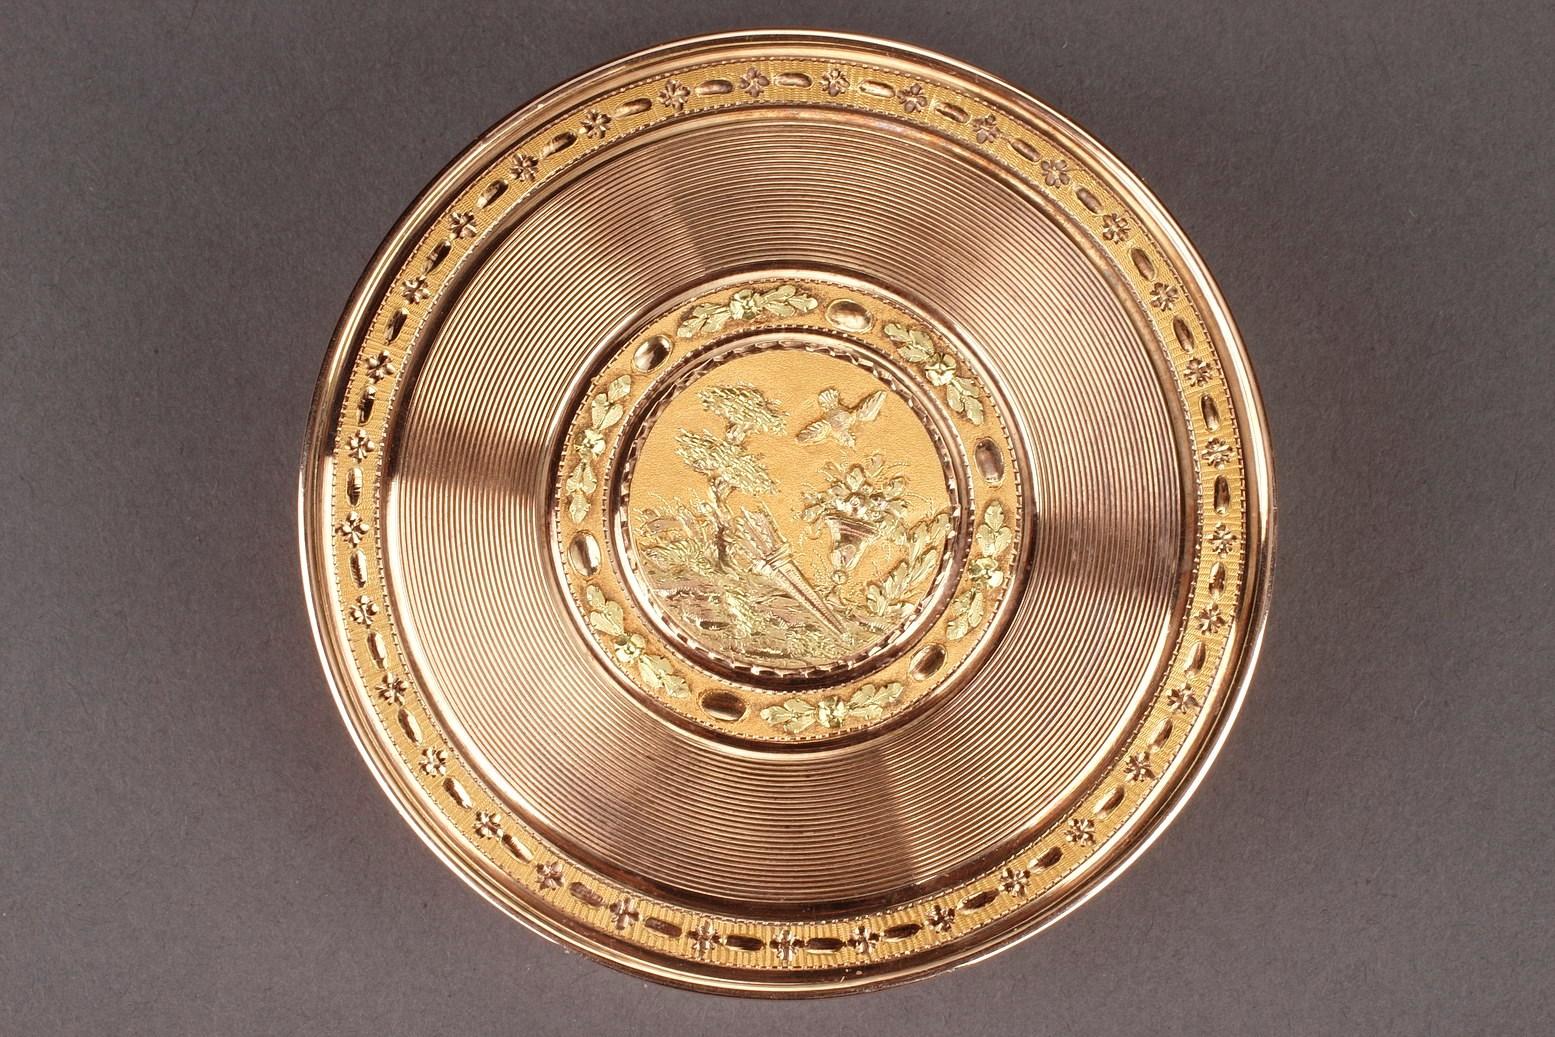 Boîte large et circulaire présentant deux nuances d'or. Le couvercle amovible est orné de lignes concentriques détaillées et d'un médaillon central représentant une colombe volant au-dessus d'un panier de fleurs et d'un carquois sur fond d'or amati.